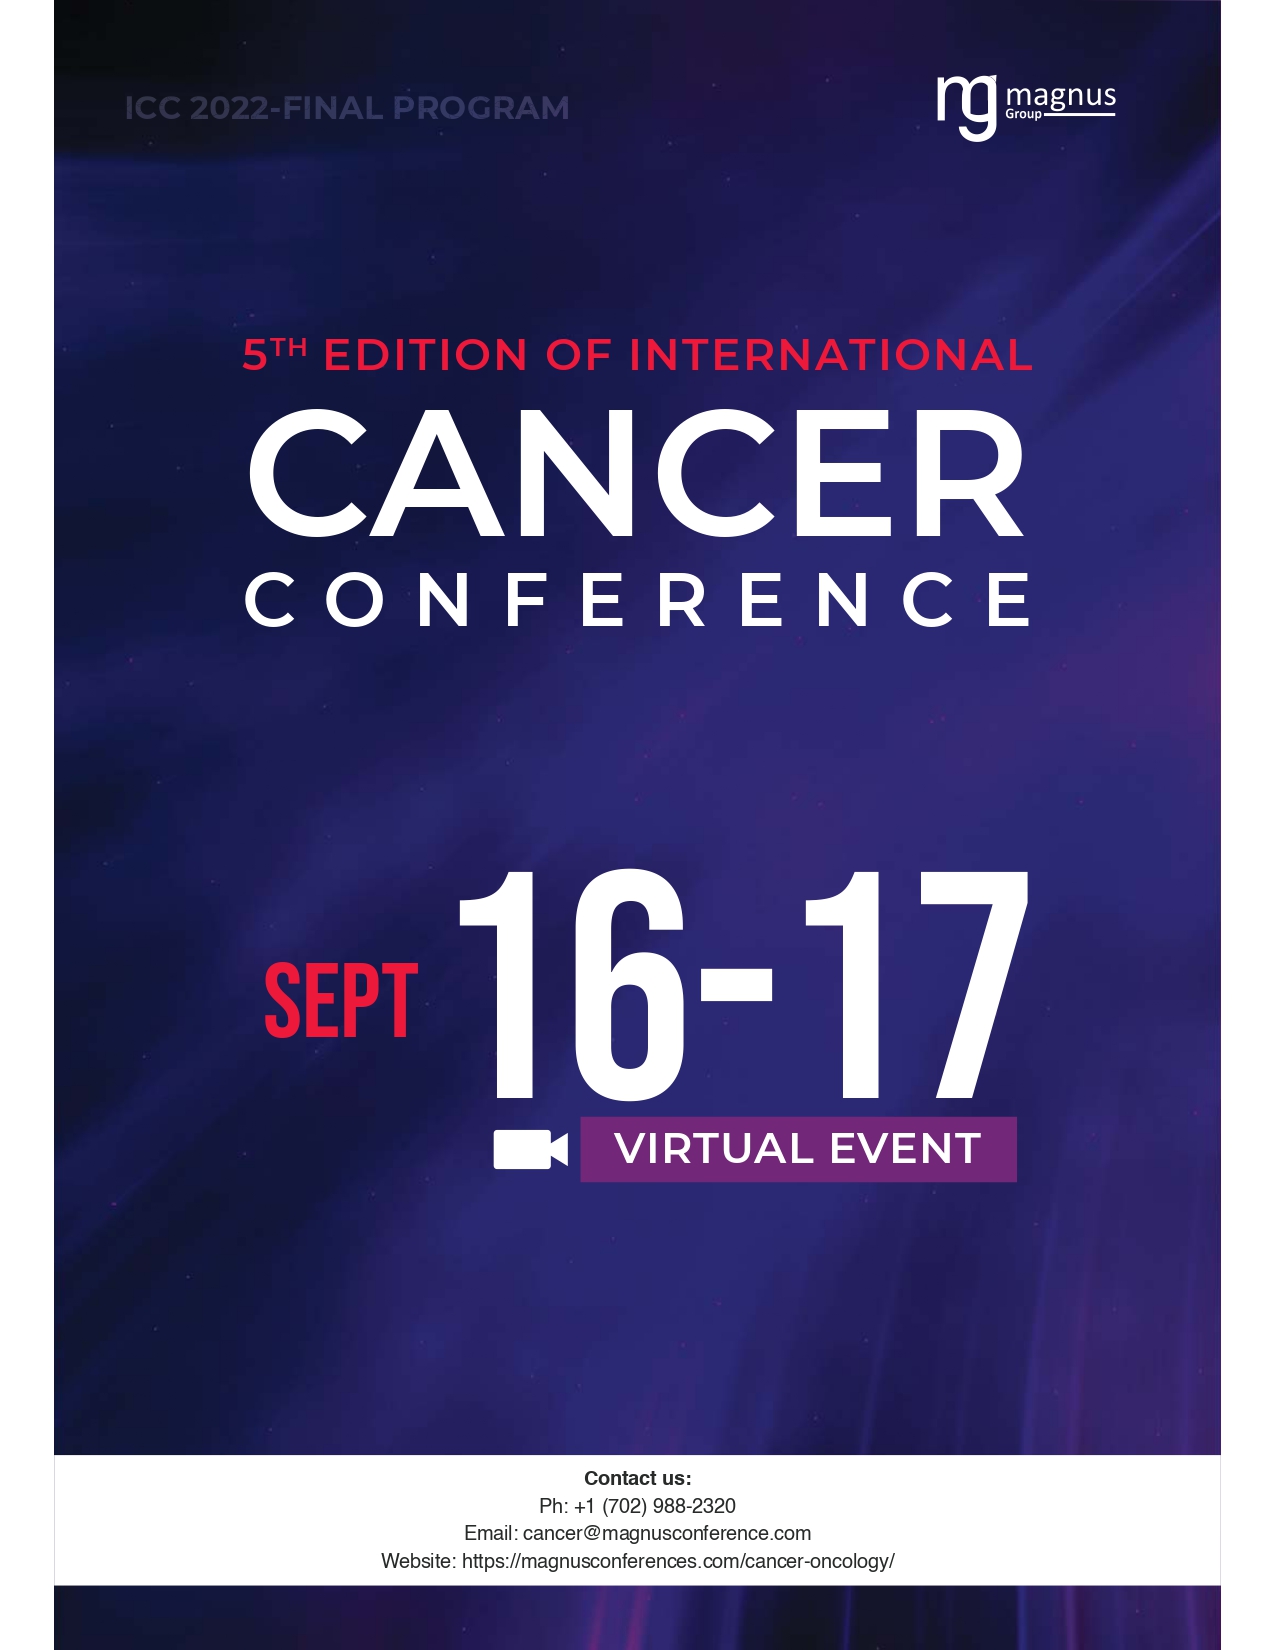 International Cancer Conference | Online Event Program